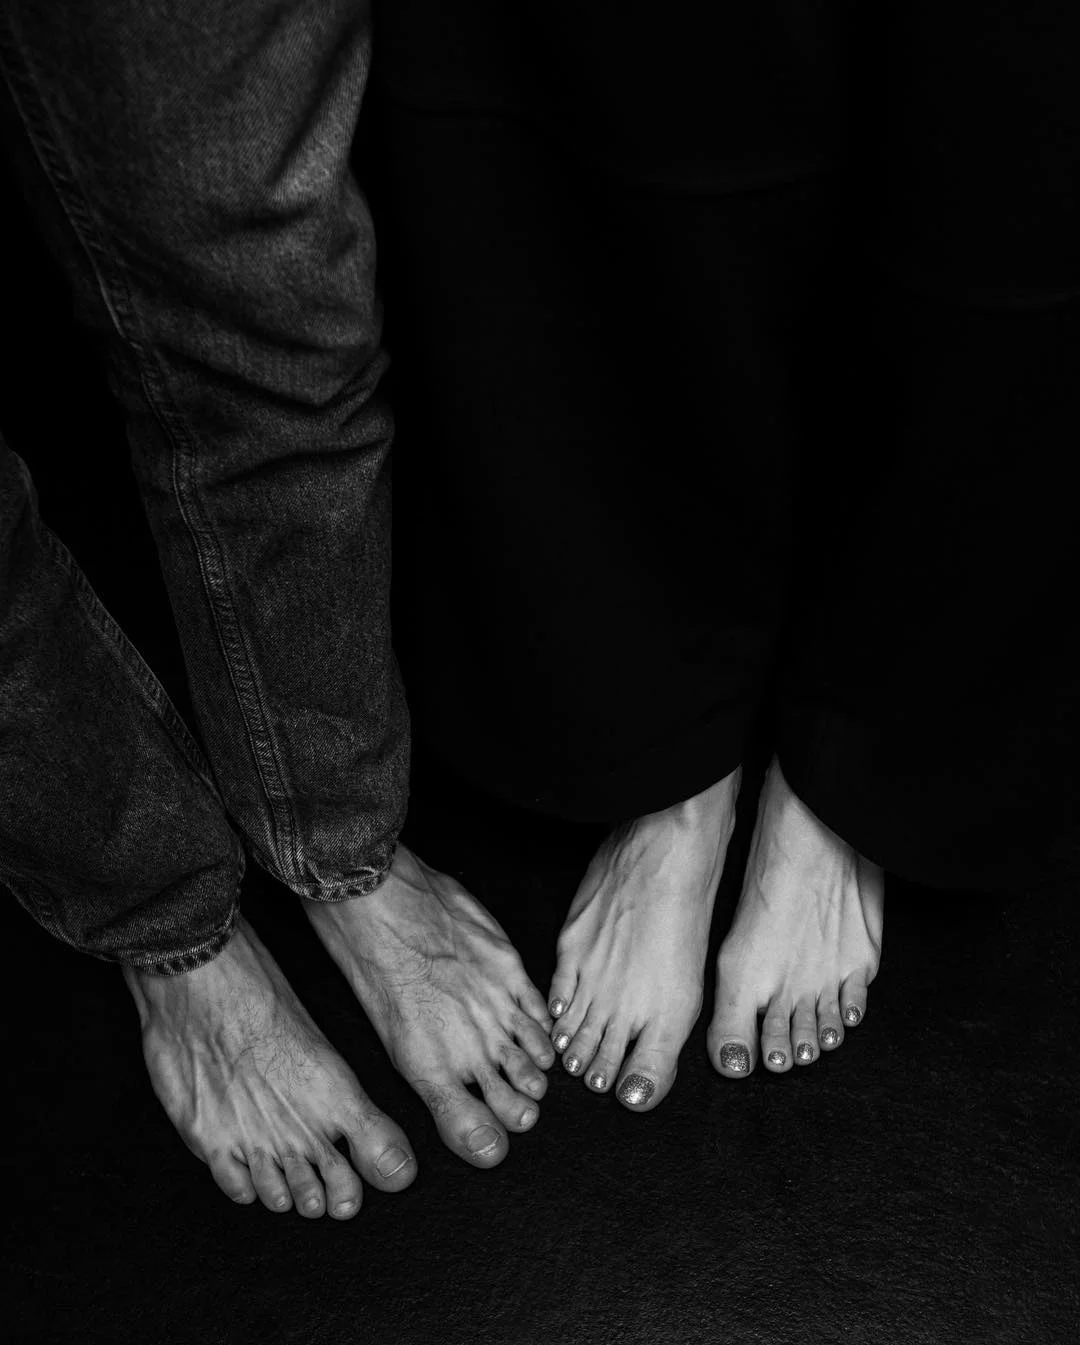 Віра Кекелія в чуттєвій фотосесії з коханим - це справжня естетична насолода - фото 425097